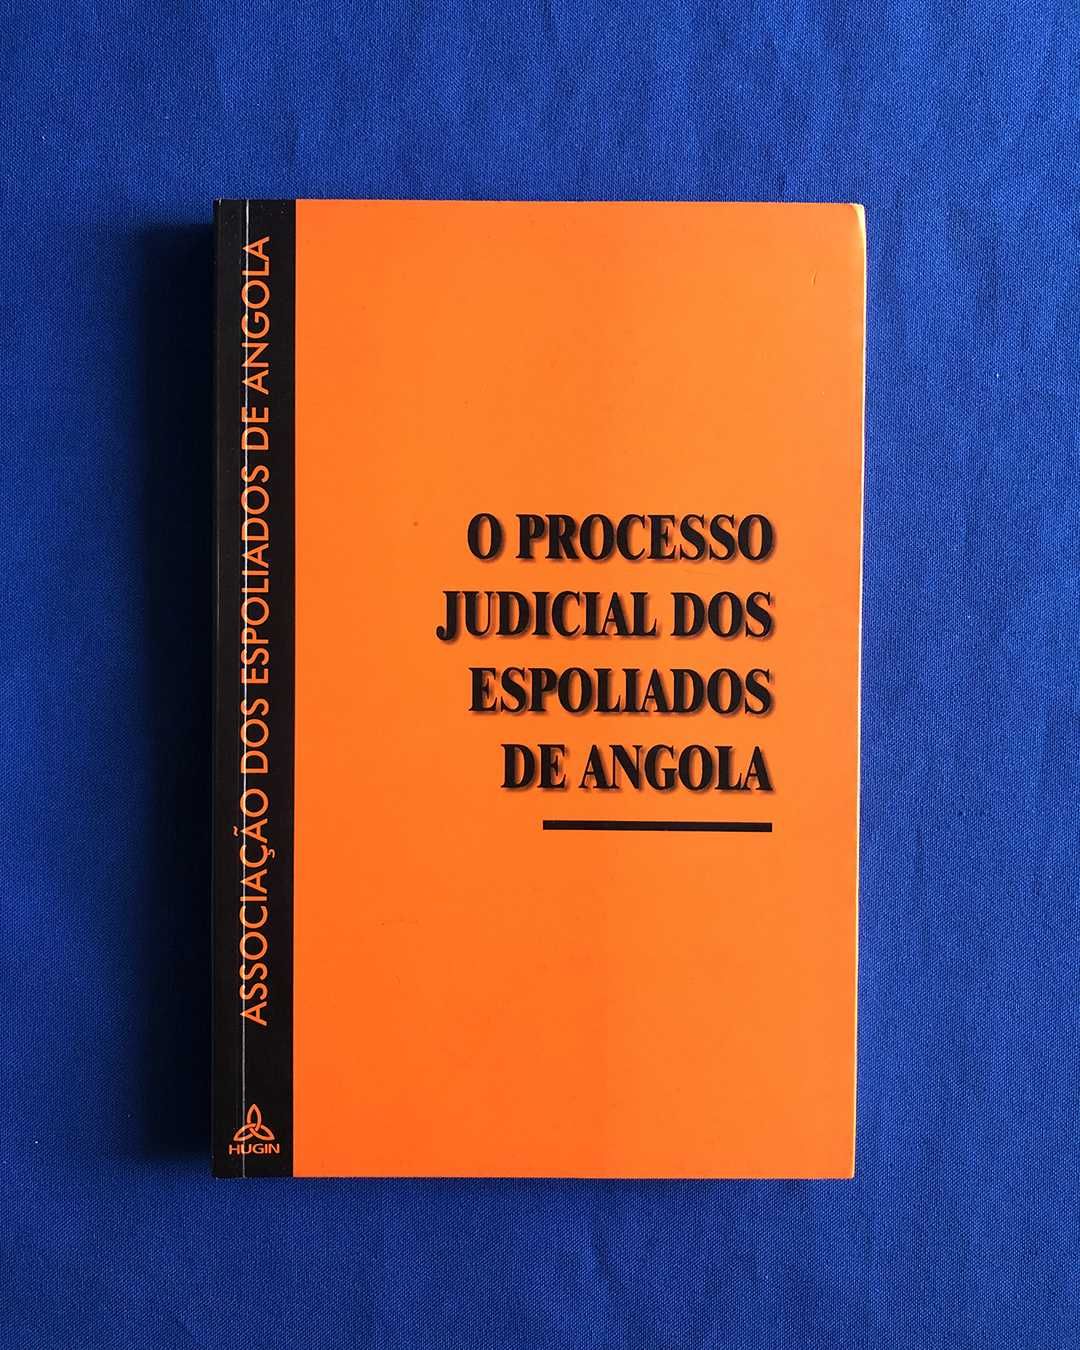 Descolonização O PROCESSO JUDICIAL DOS ESPOLIADOS DE ANGOLA